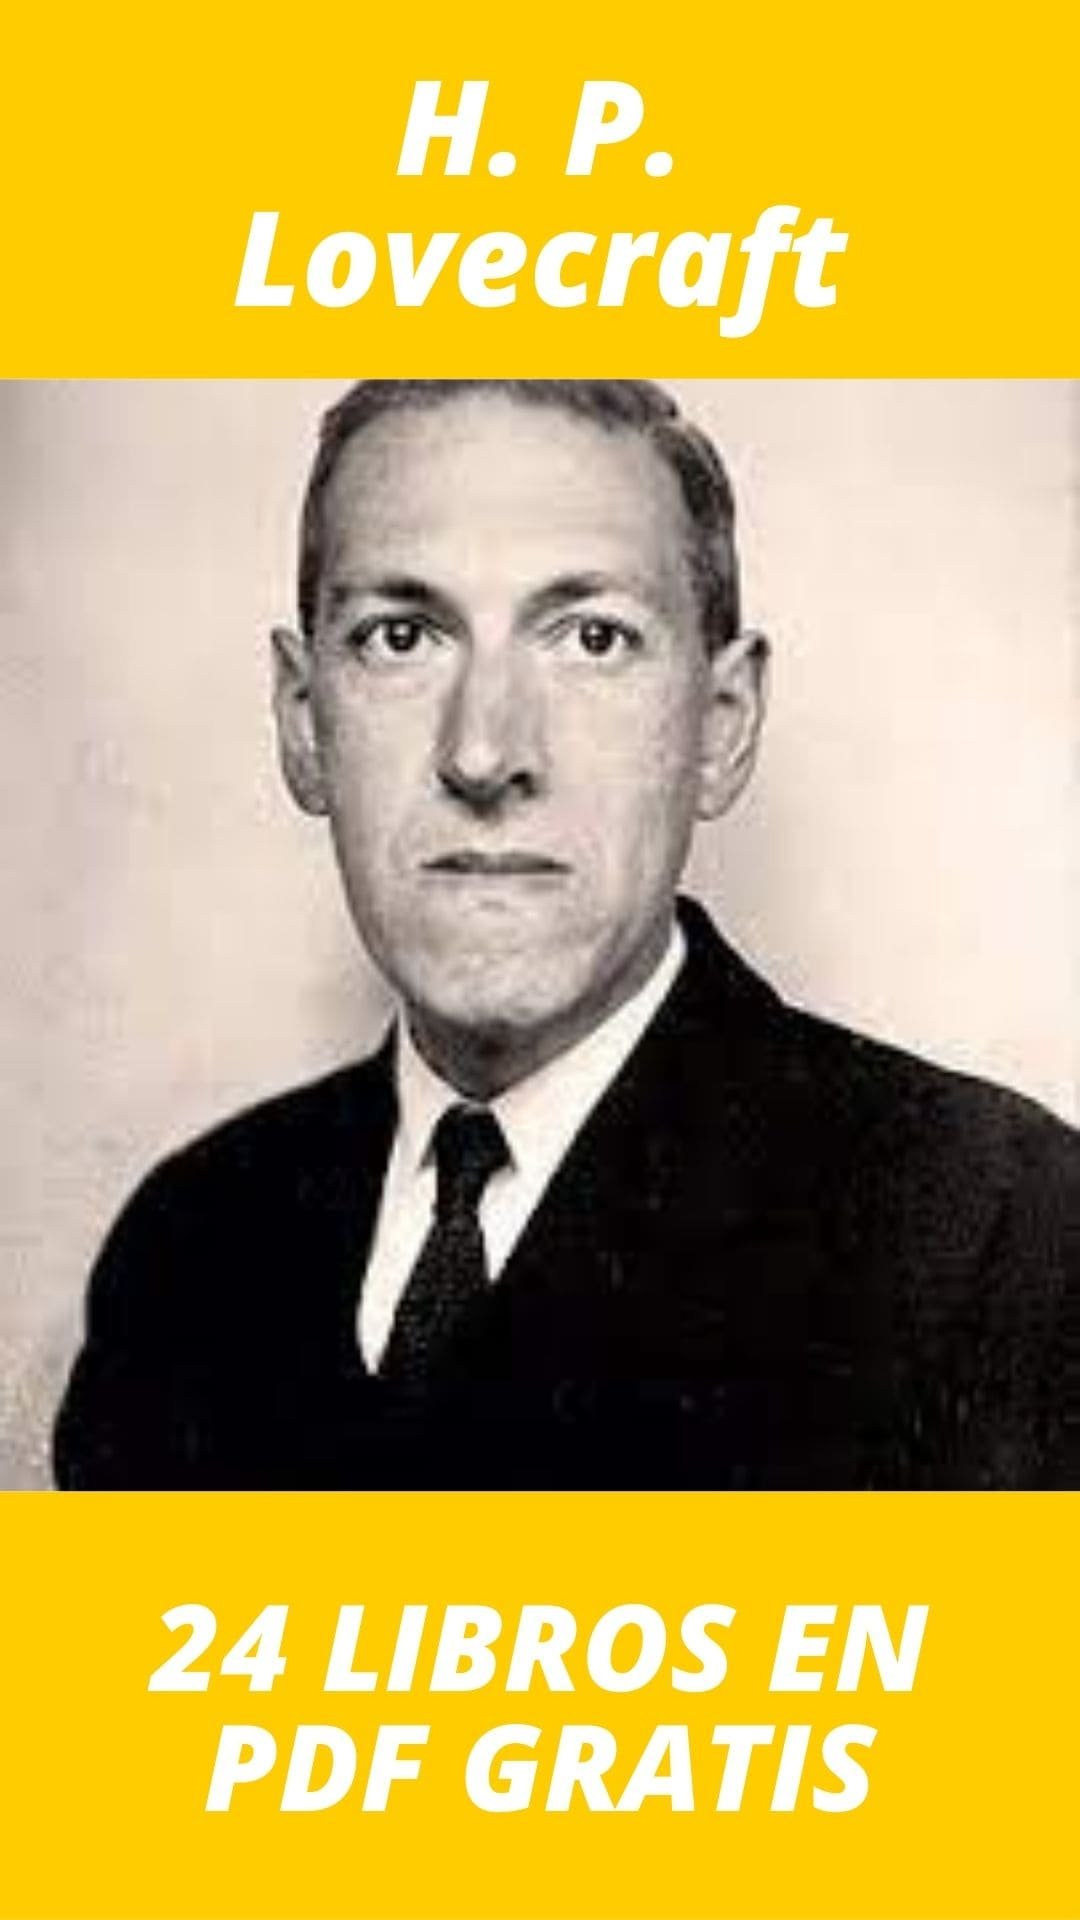 Libros de H. P. Lovecraft Gratis en PDF